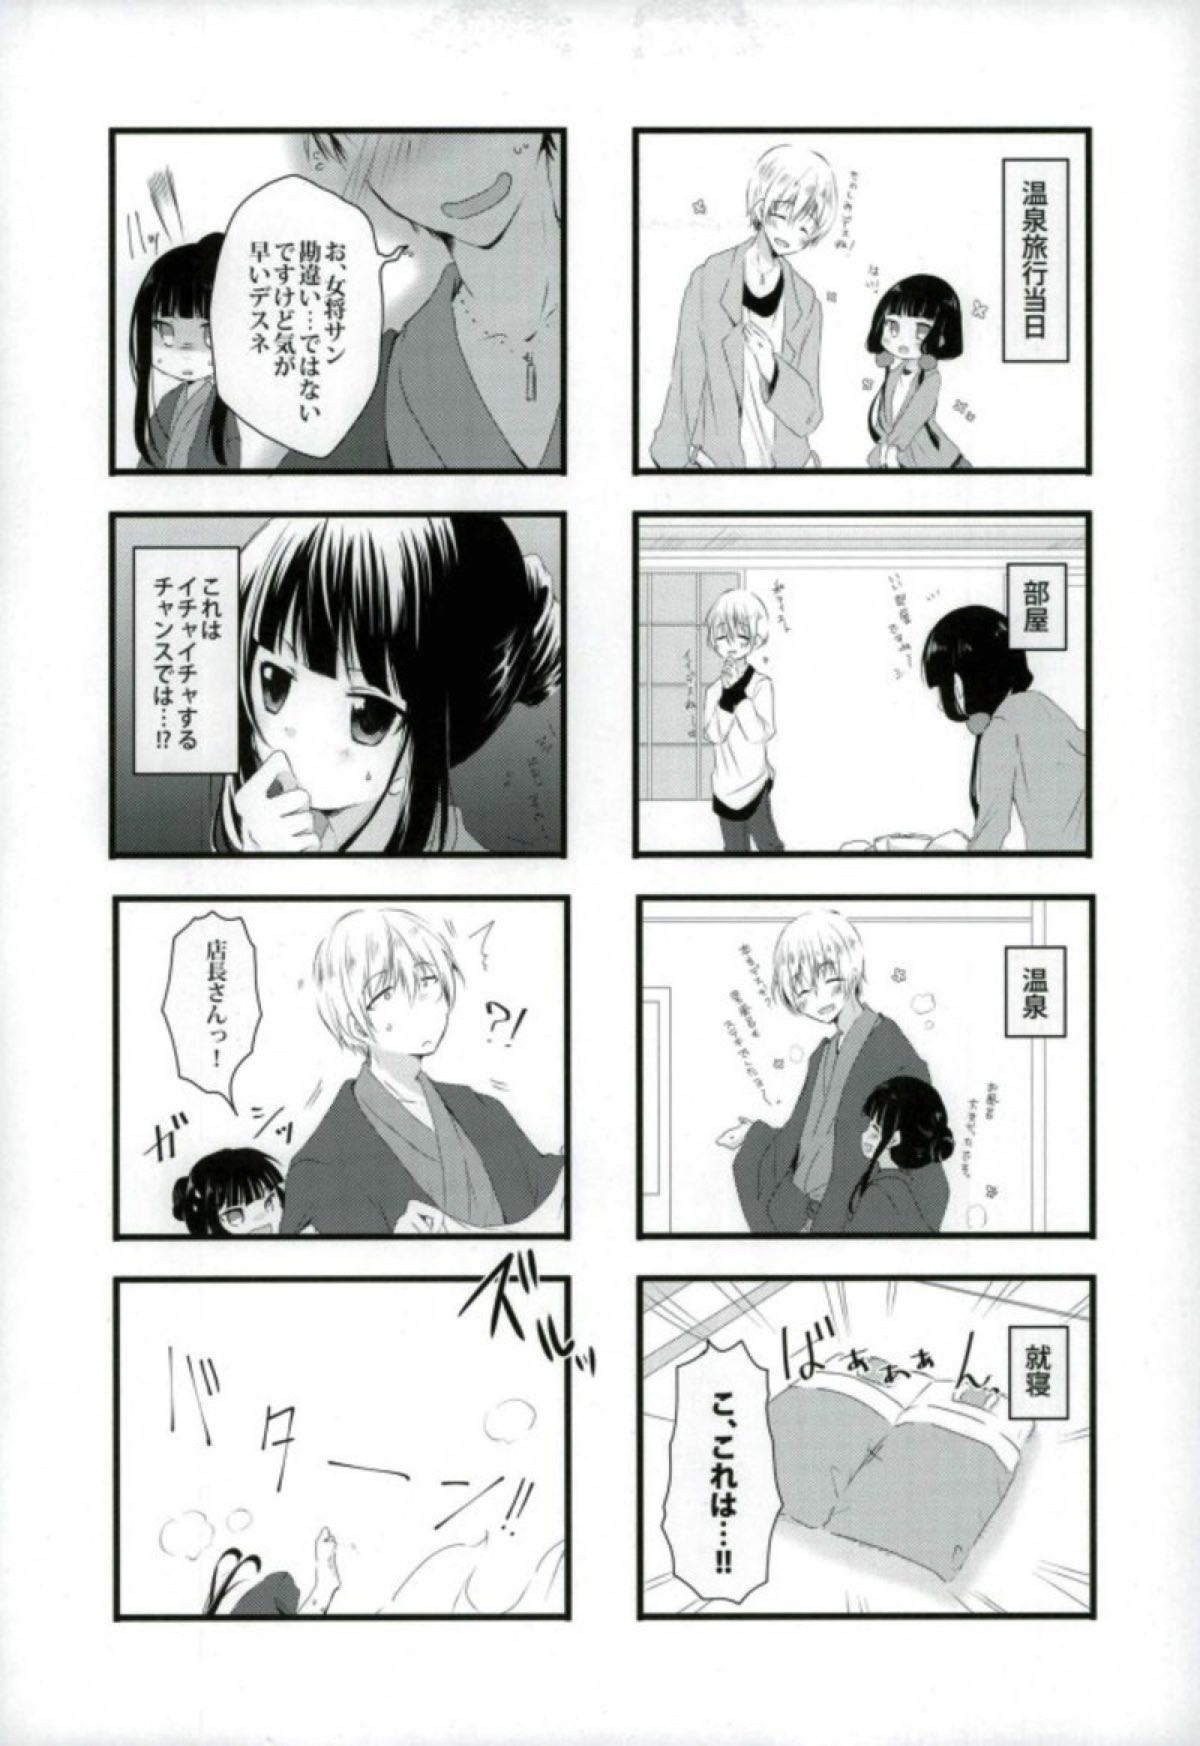 【ブレンド・S】恋する女の子たちの胸キュン不可避な４コマ漫画☆の画像7枚目